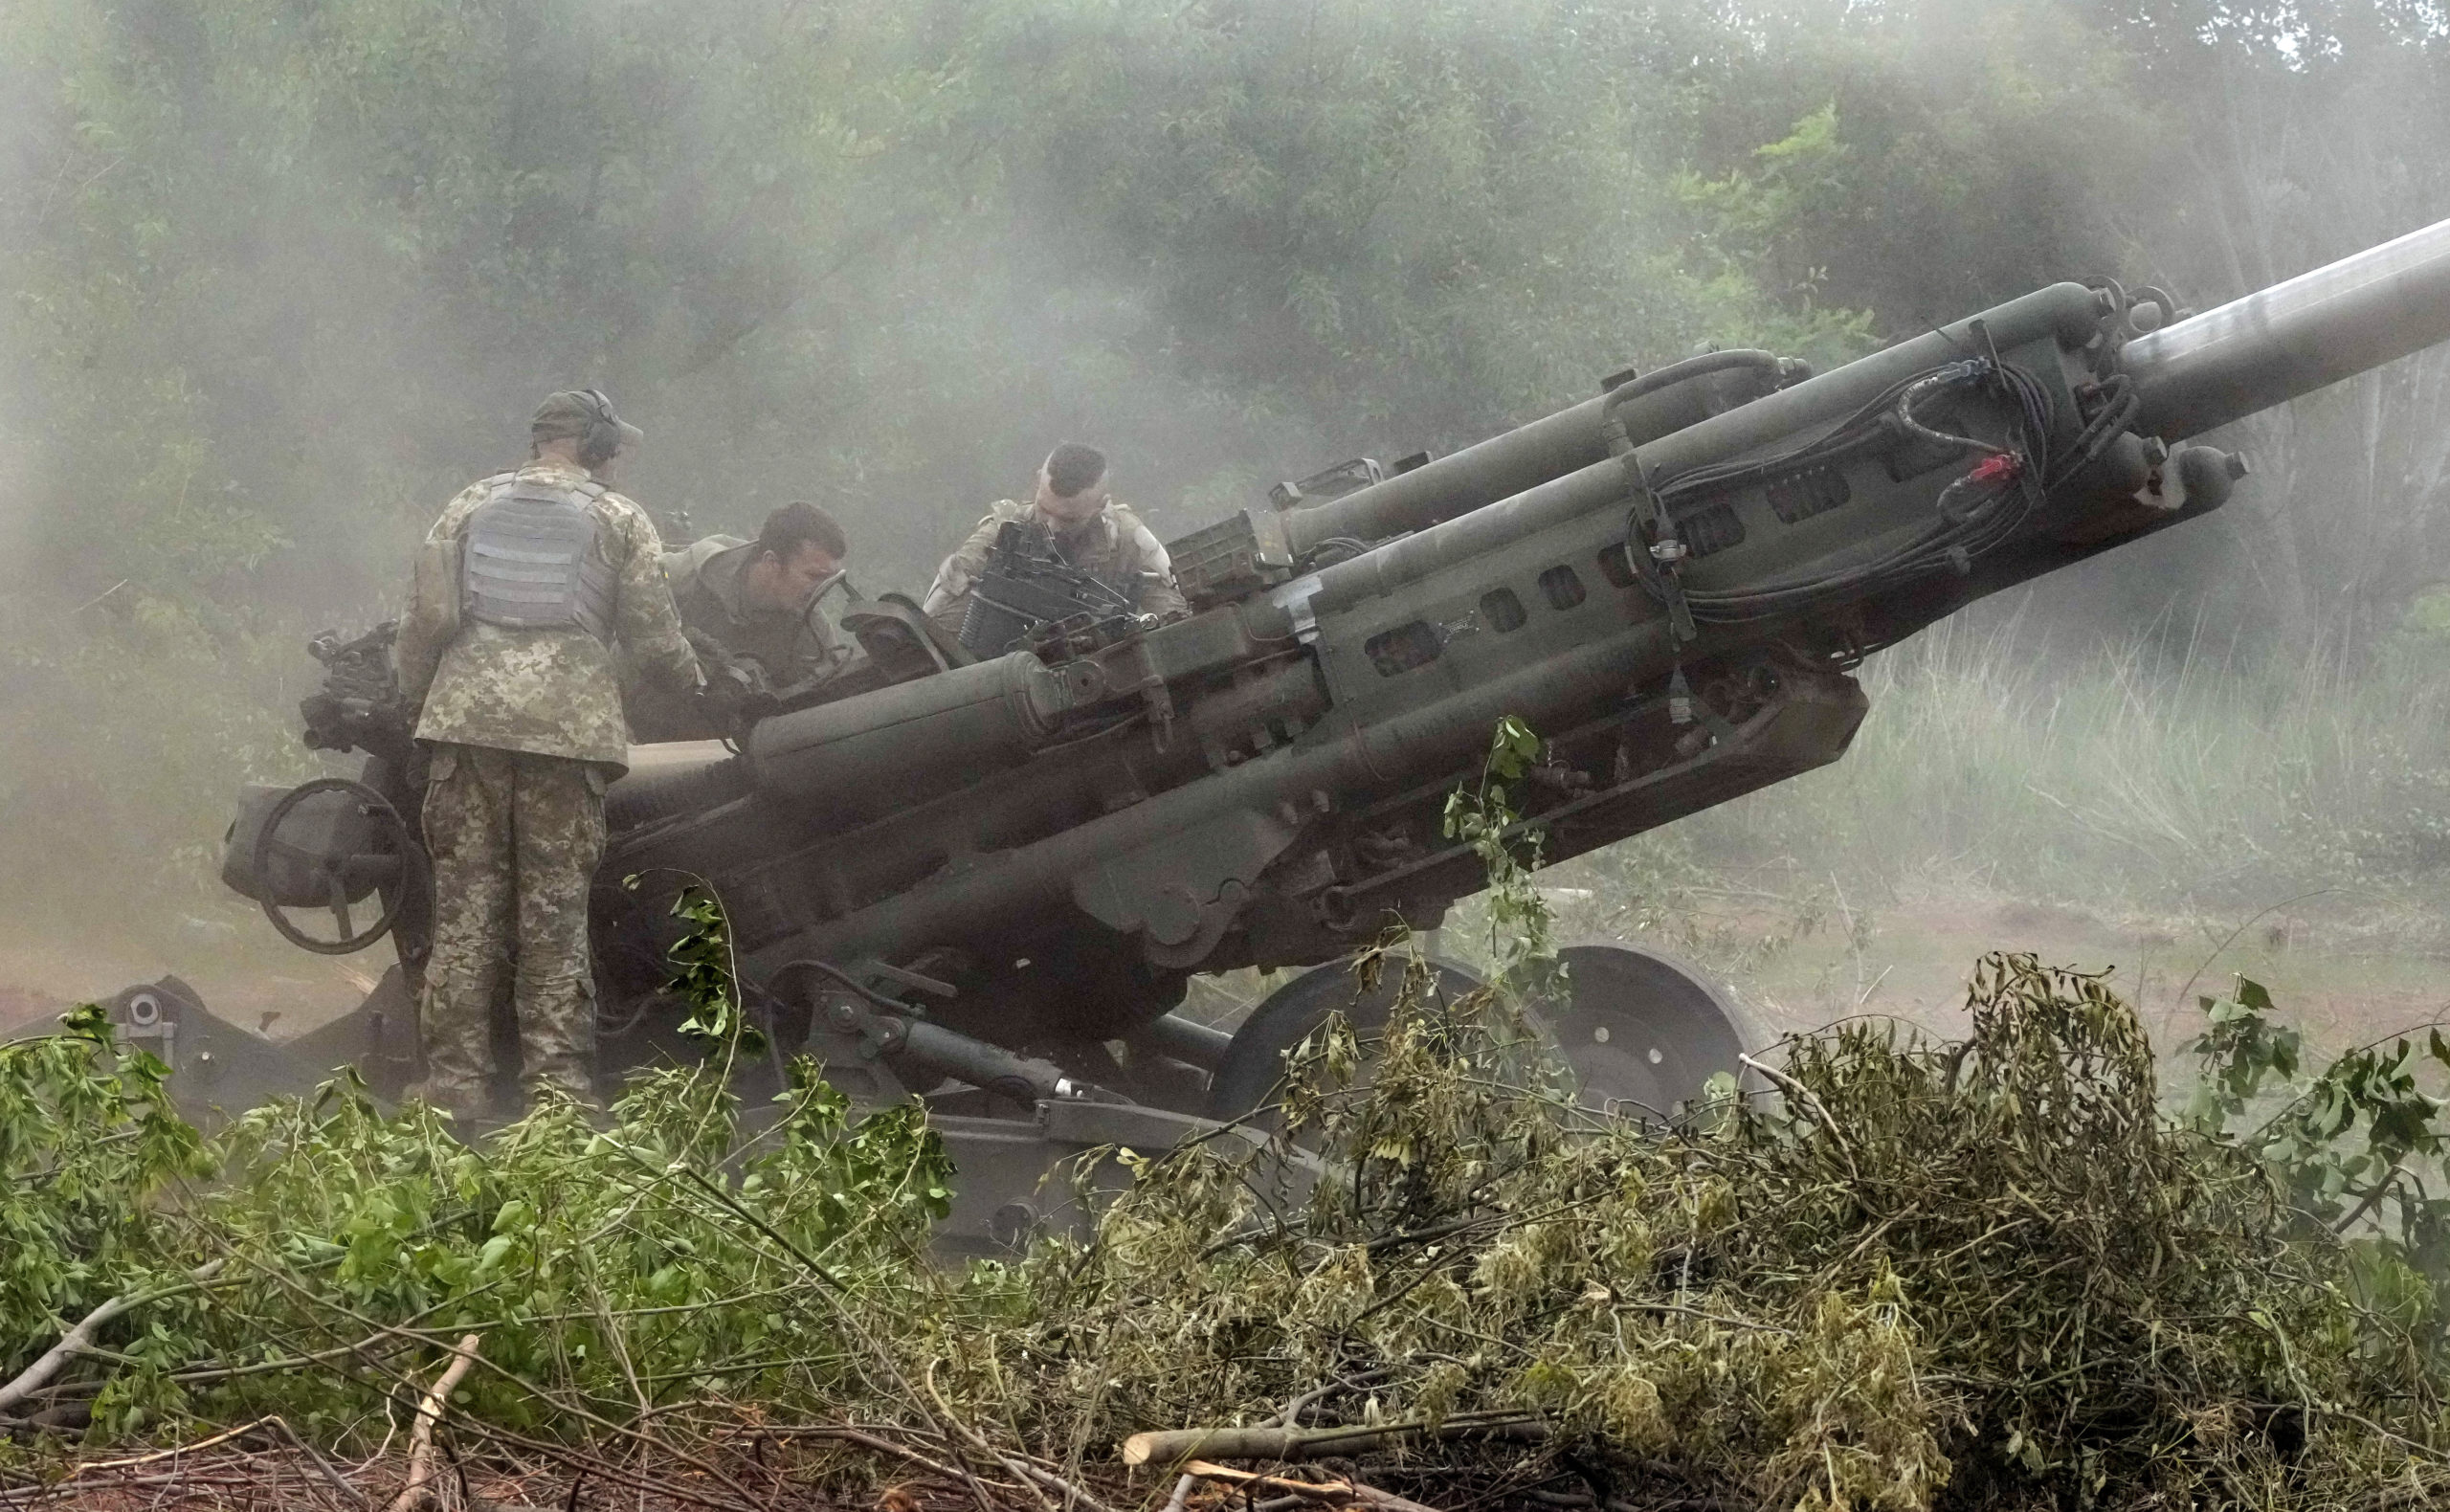 Οι ουκρανικές δυνάμεις ενδέχεται να υποχωρήσουν από το Λισιτσάνσκ για να αποφύγουν την περικύκλωσή τους